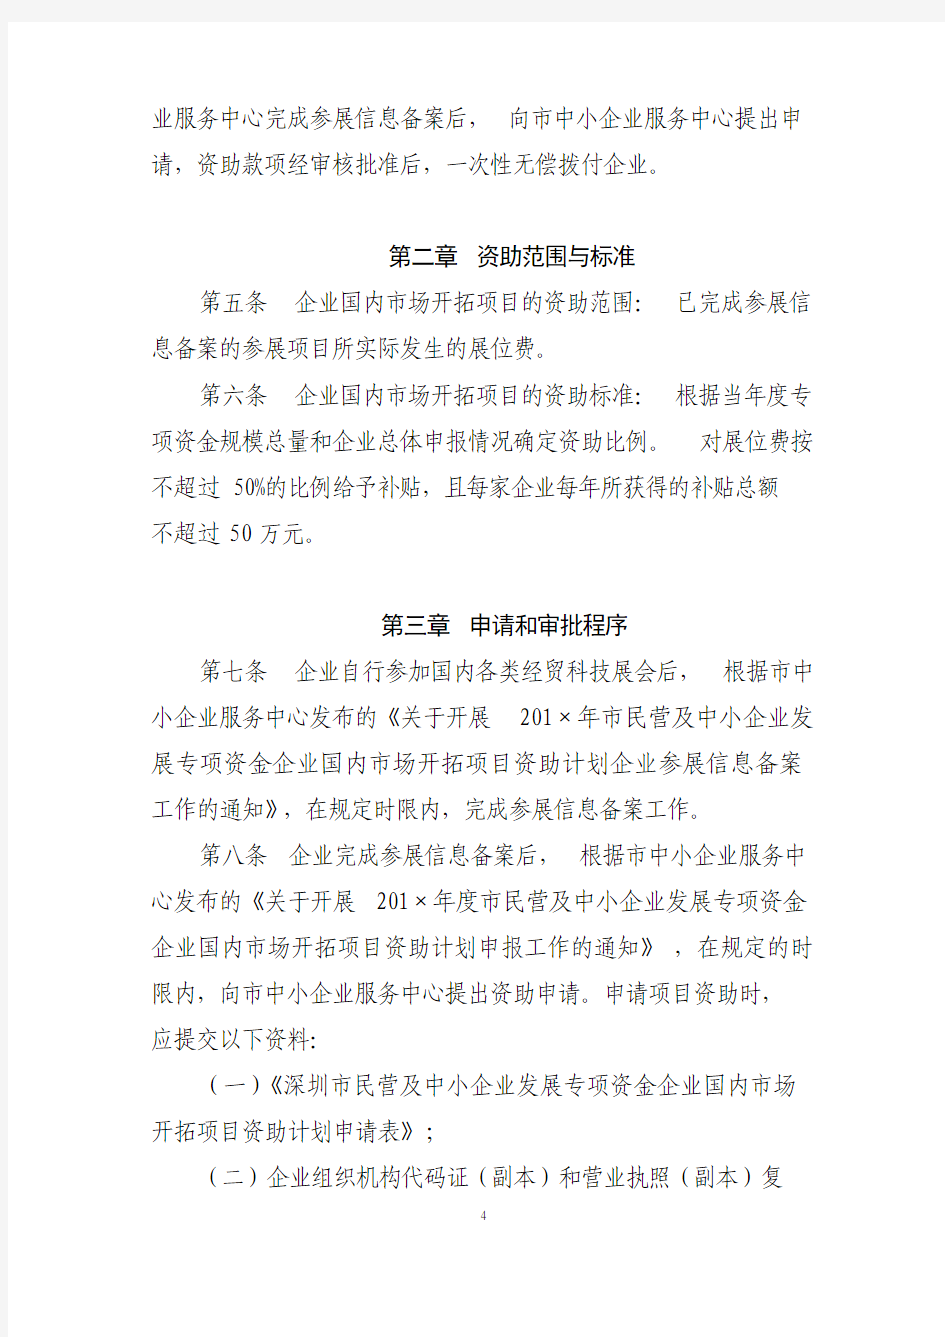 深圳市民营及中小企业发展专项资金资助计划操作规程